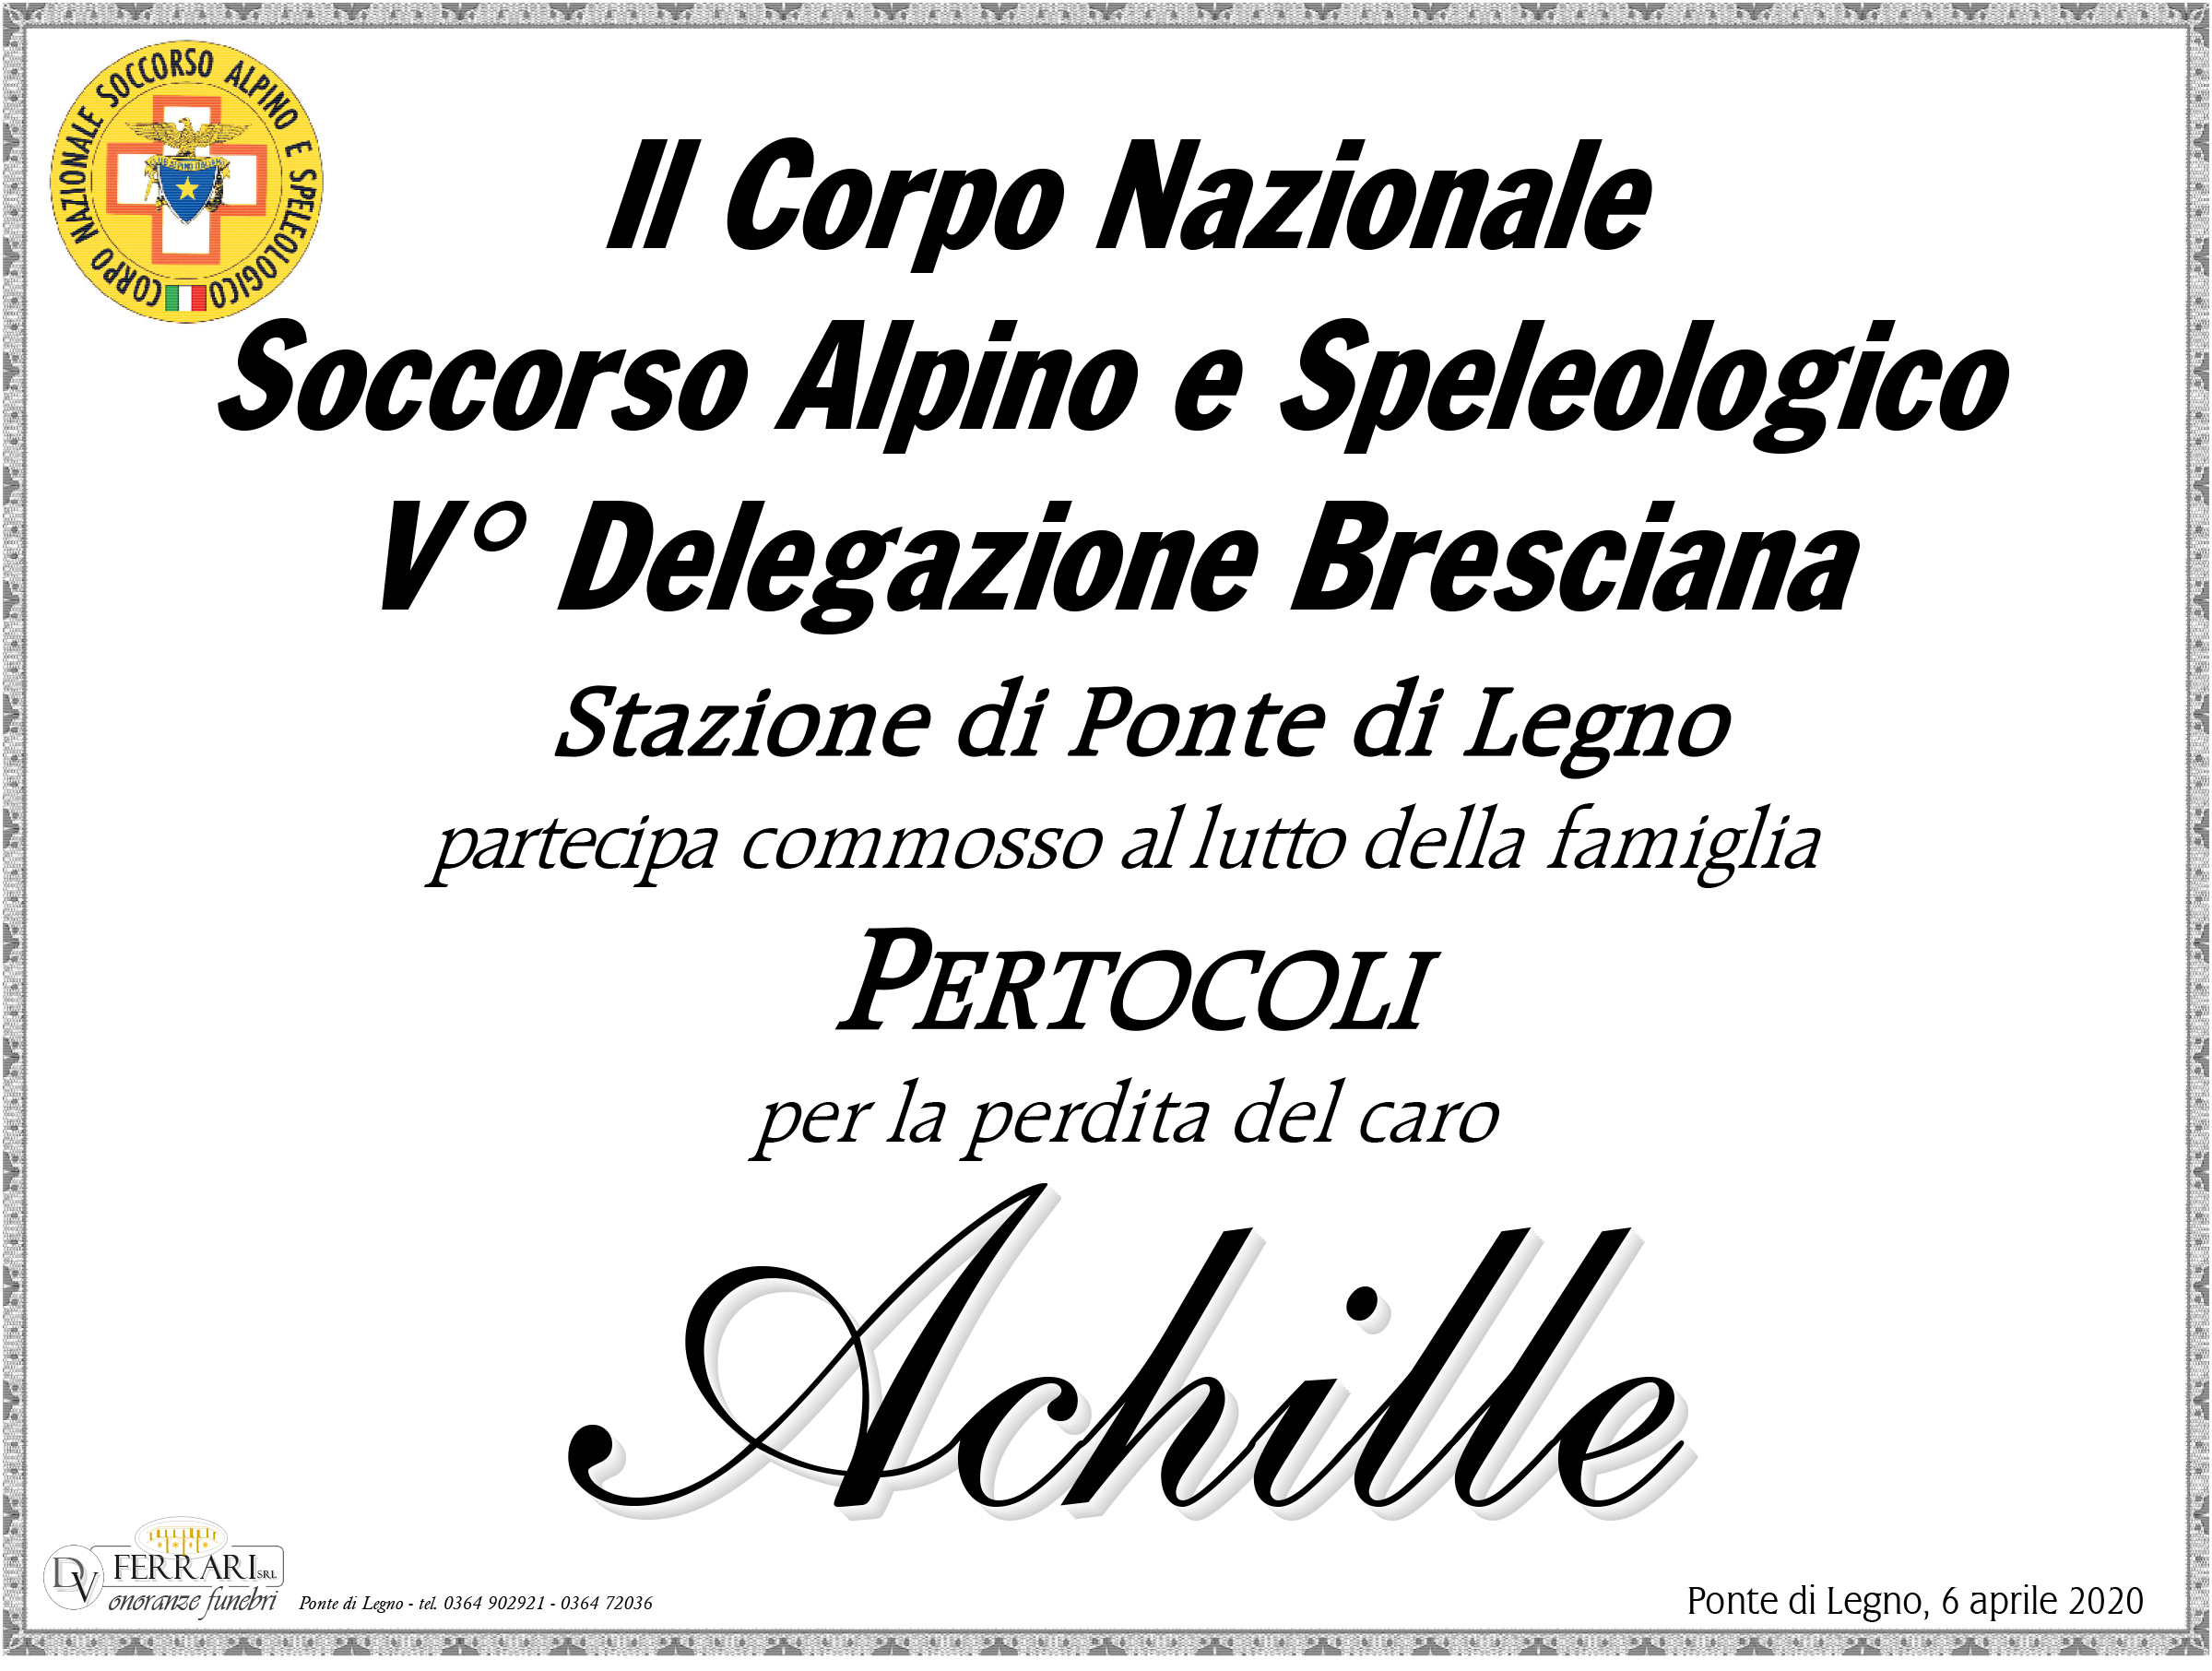 ACHILLE PERTOCOLI - PONTE DI LEGNO - C.N.S.A.S.